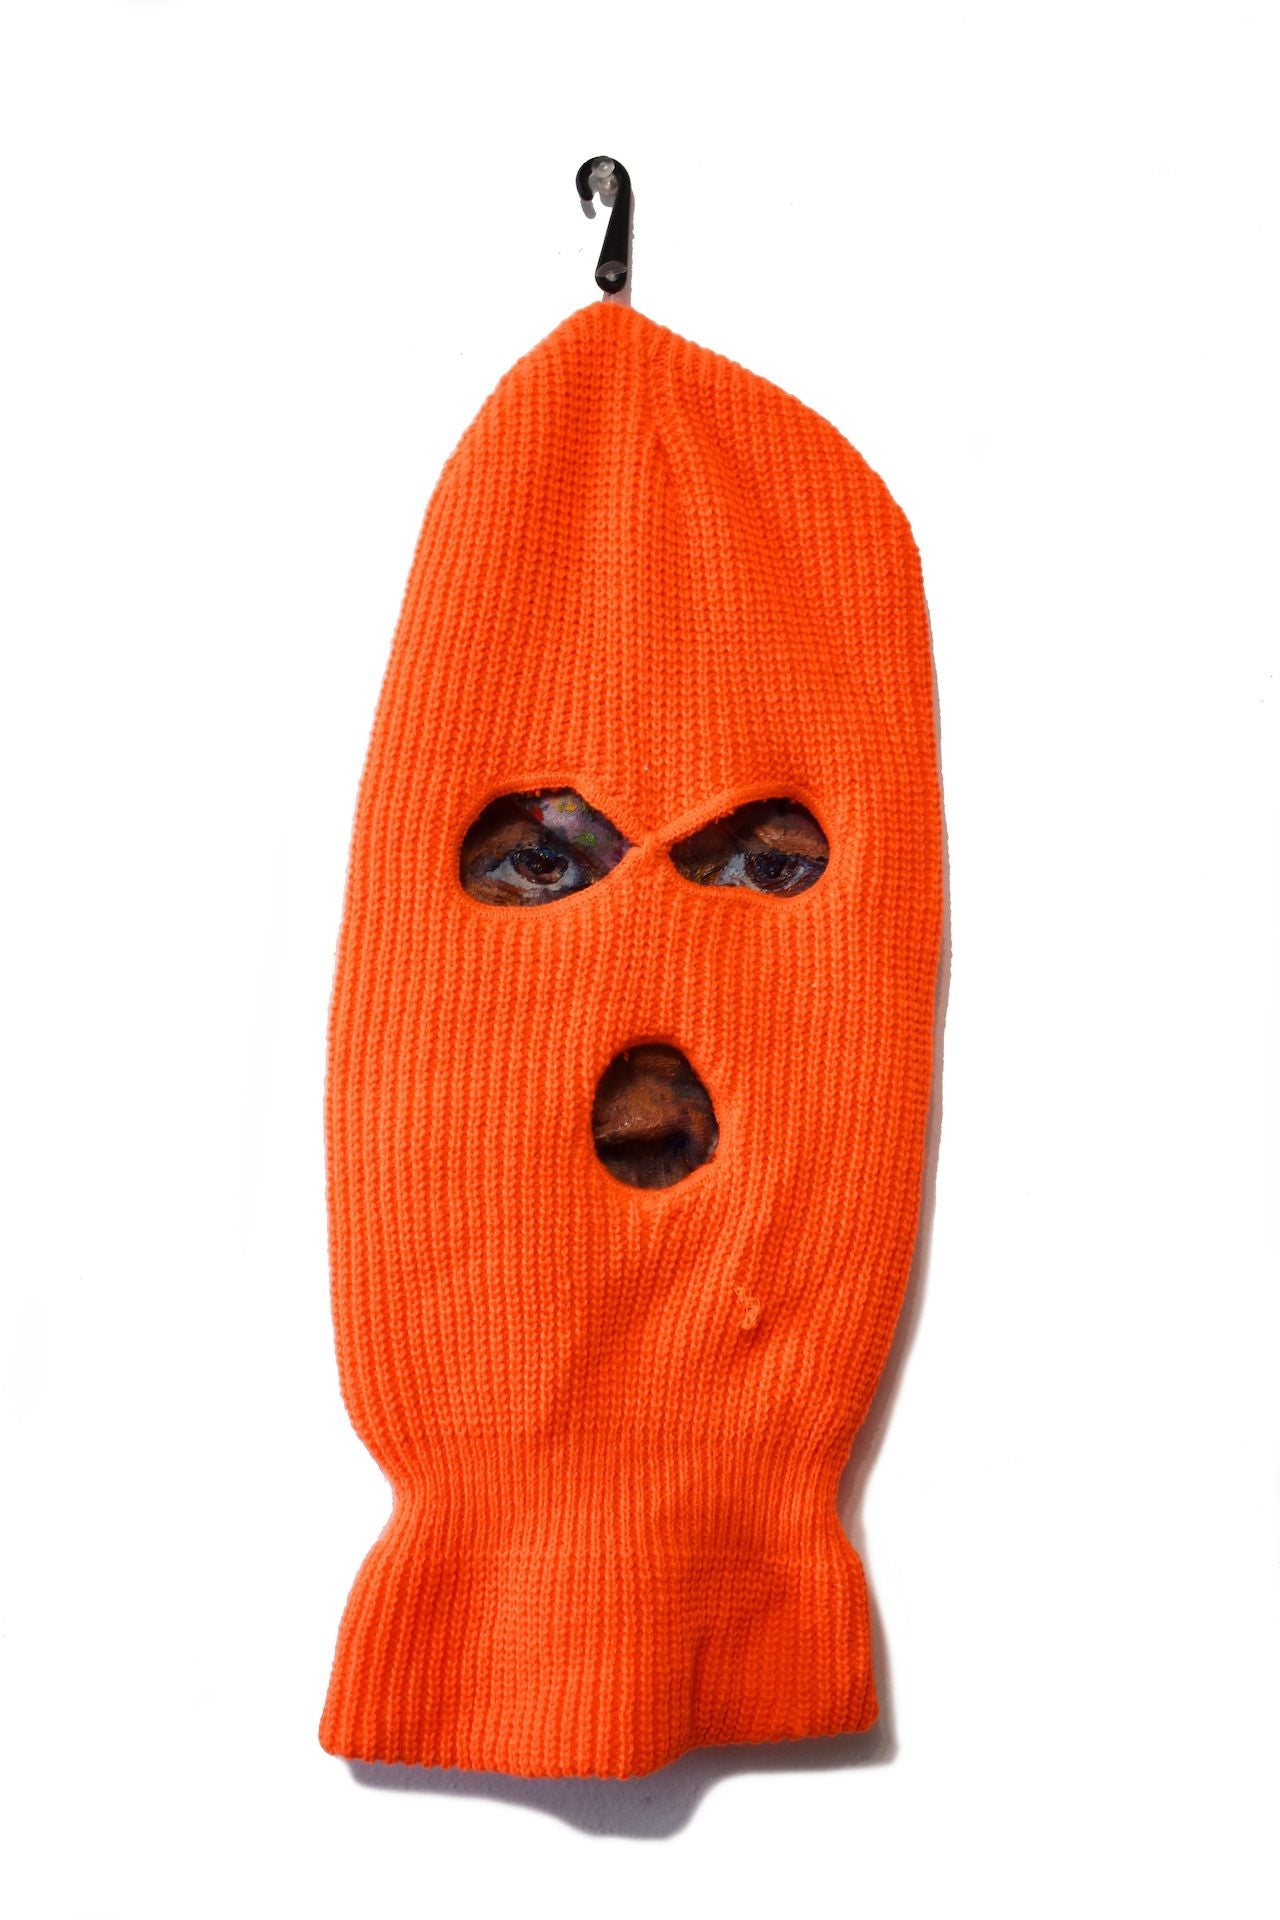 Kris Rac, "Orange Rag Face"